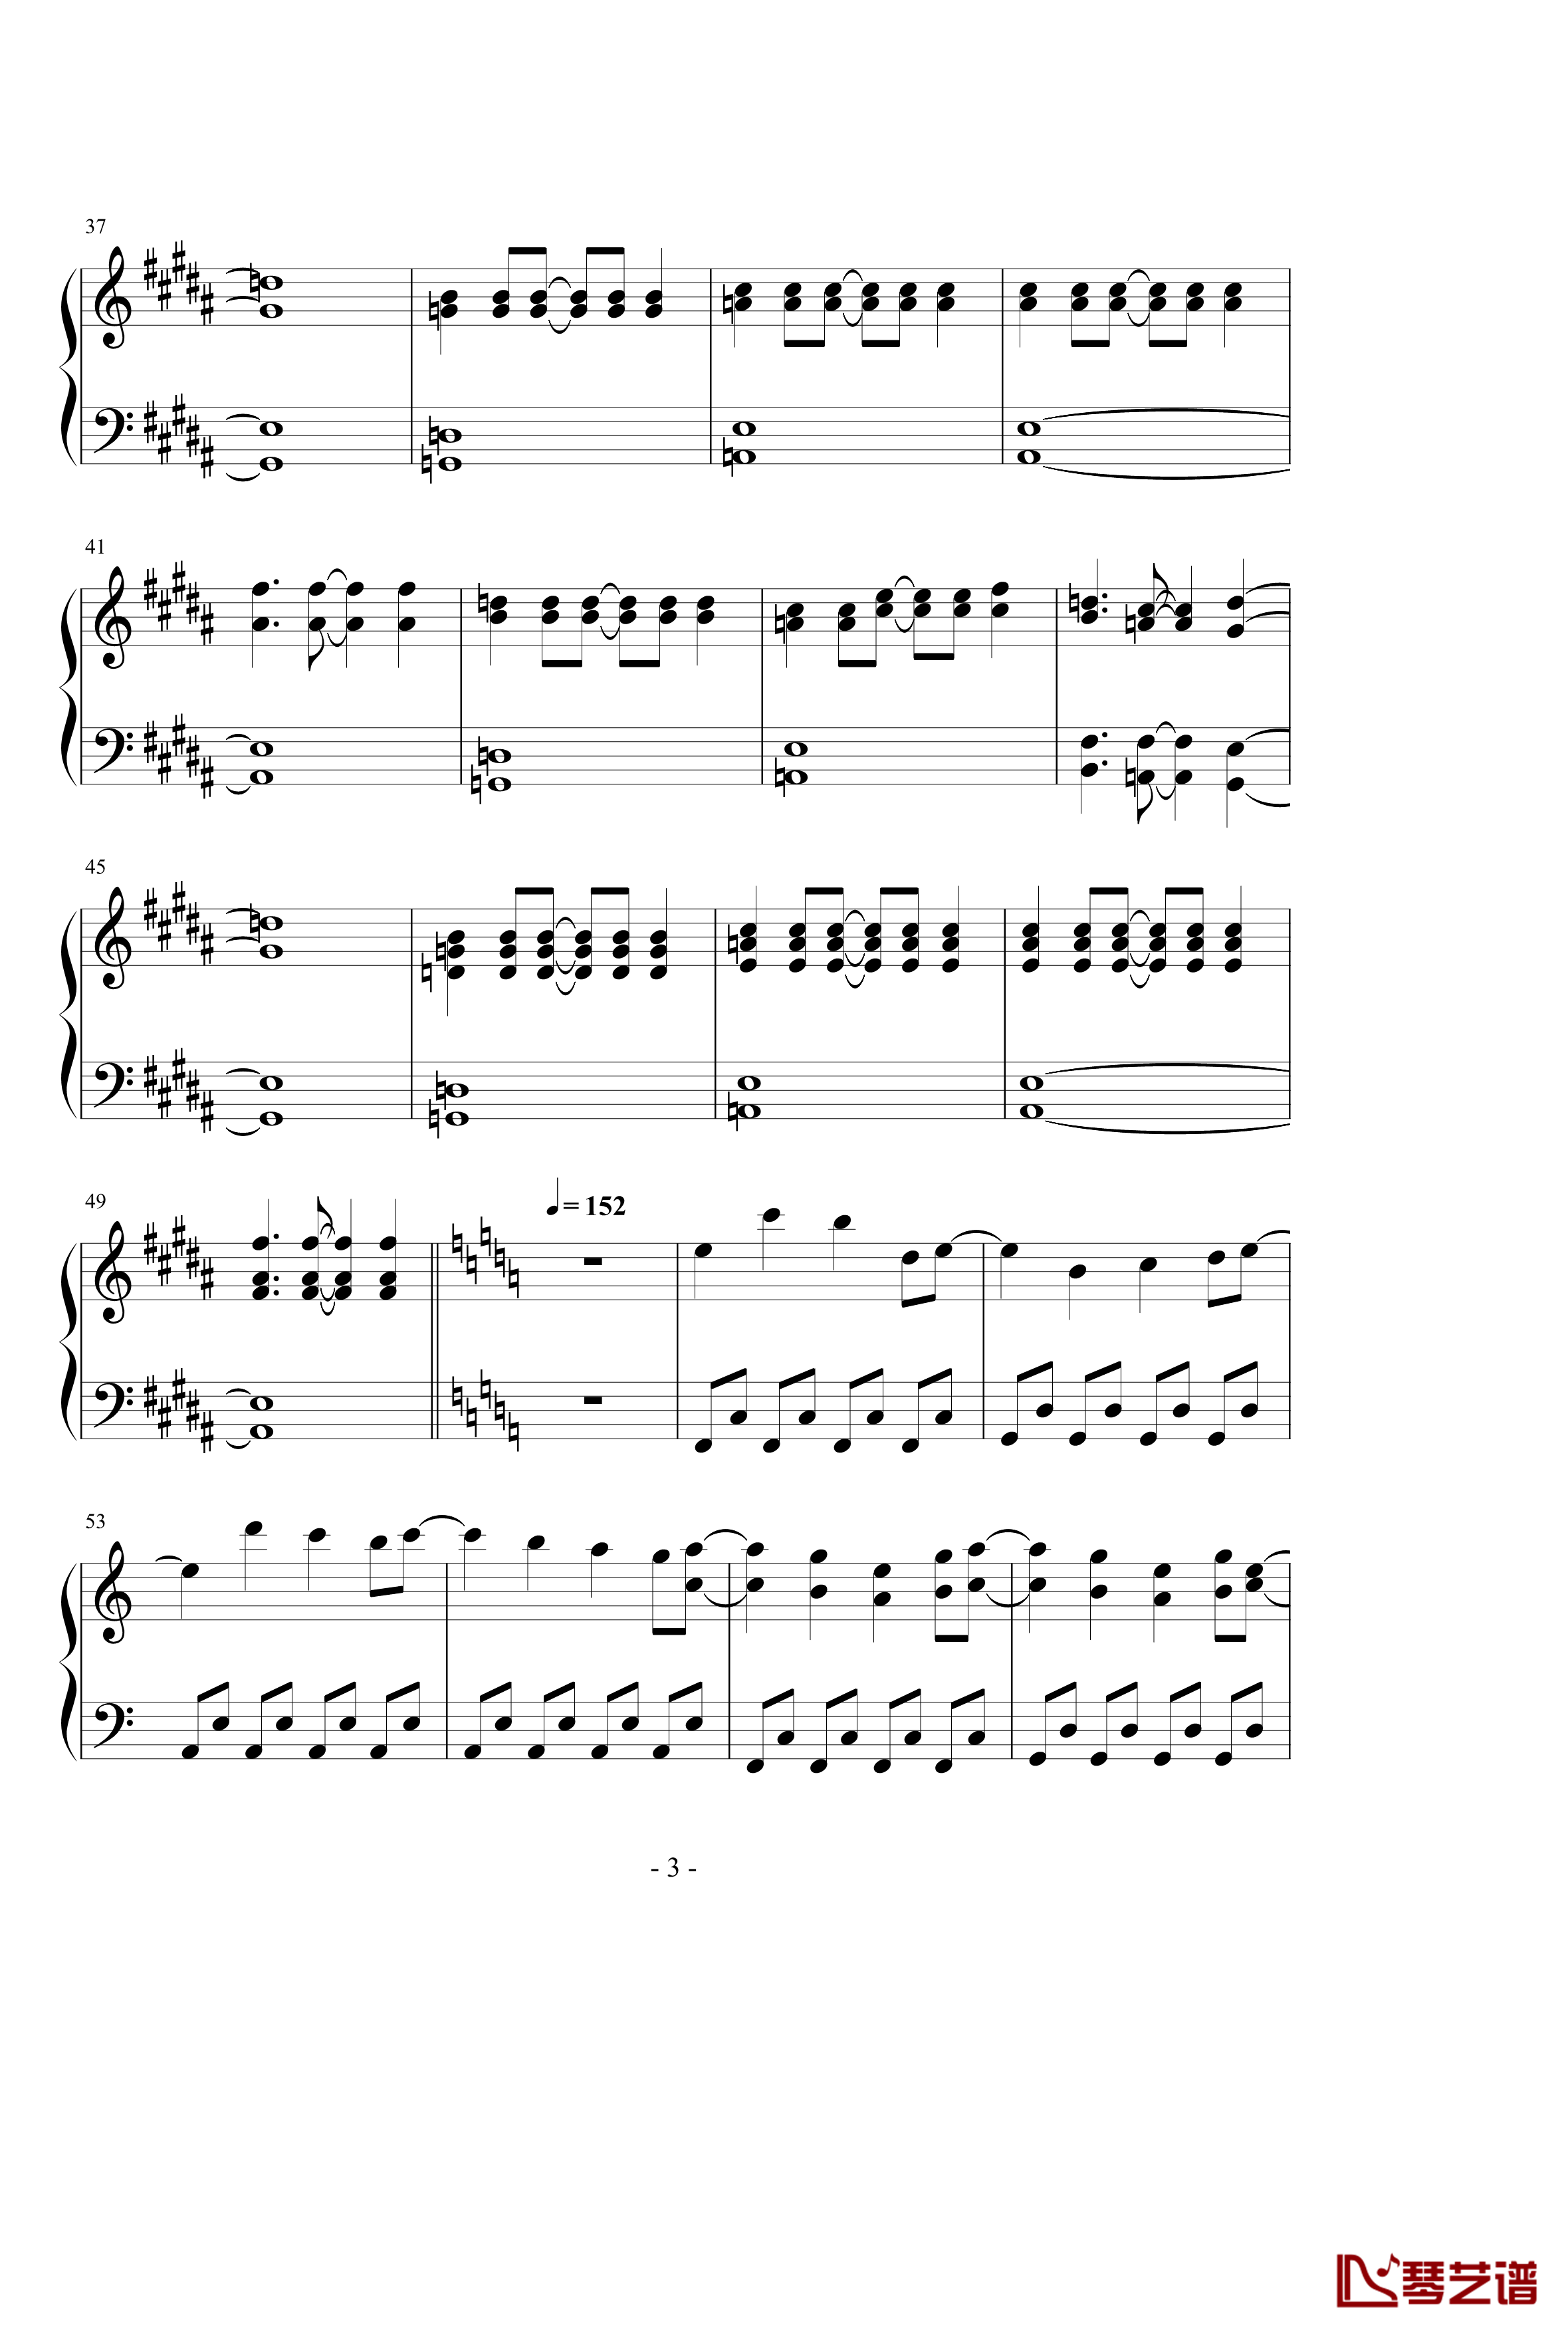 ネクロファンタジア钢琴谱-八云紫3